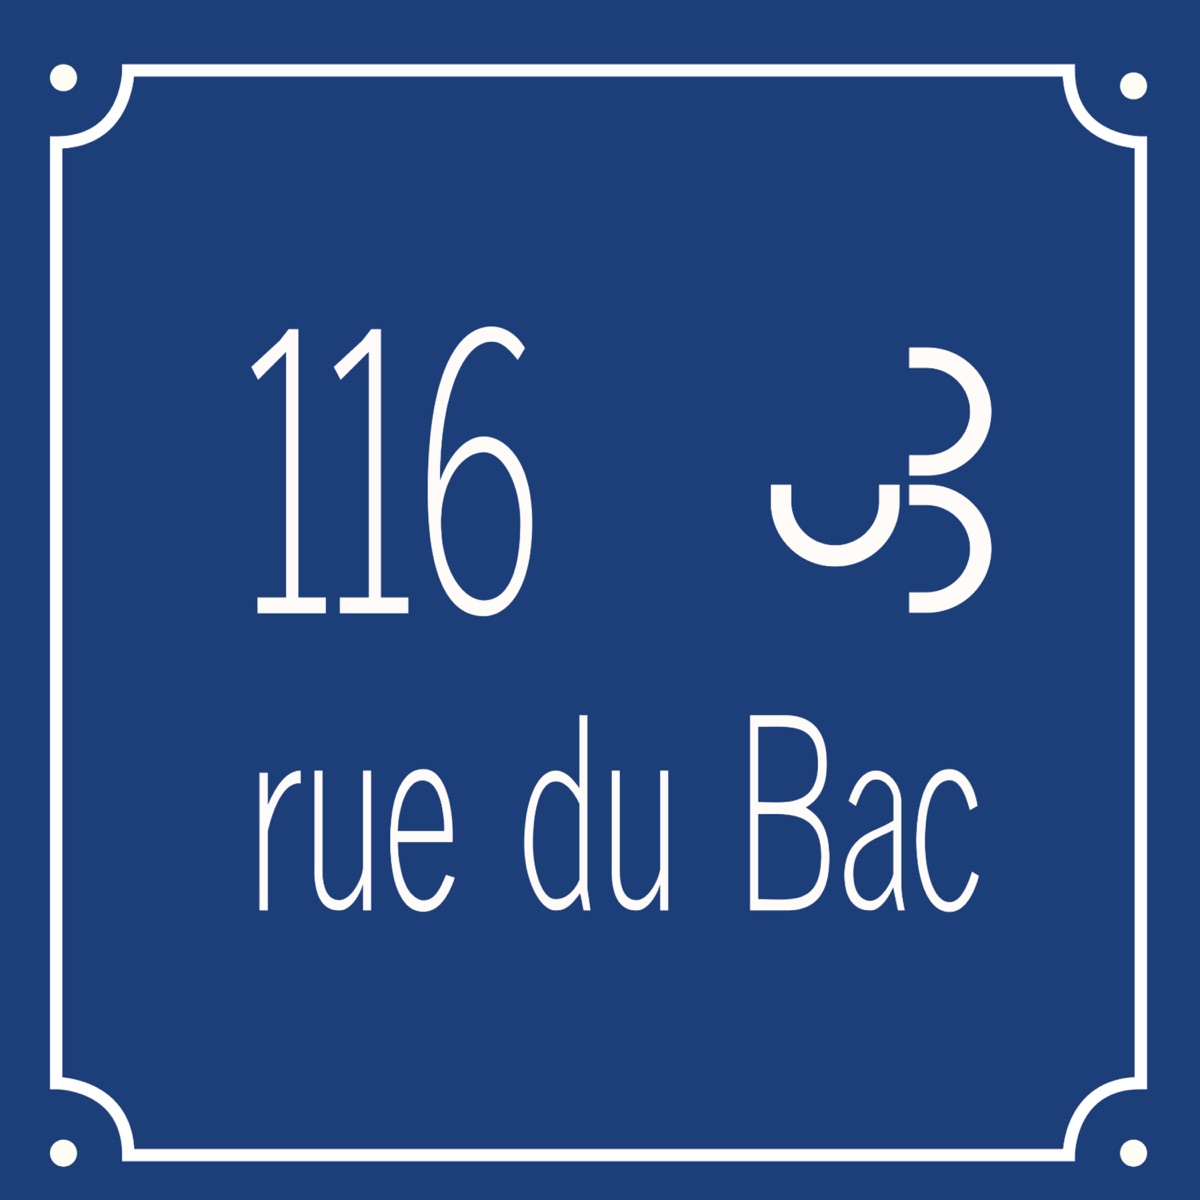 116 rue du Bac – Podcast – Podtail